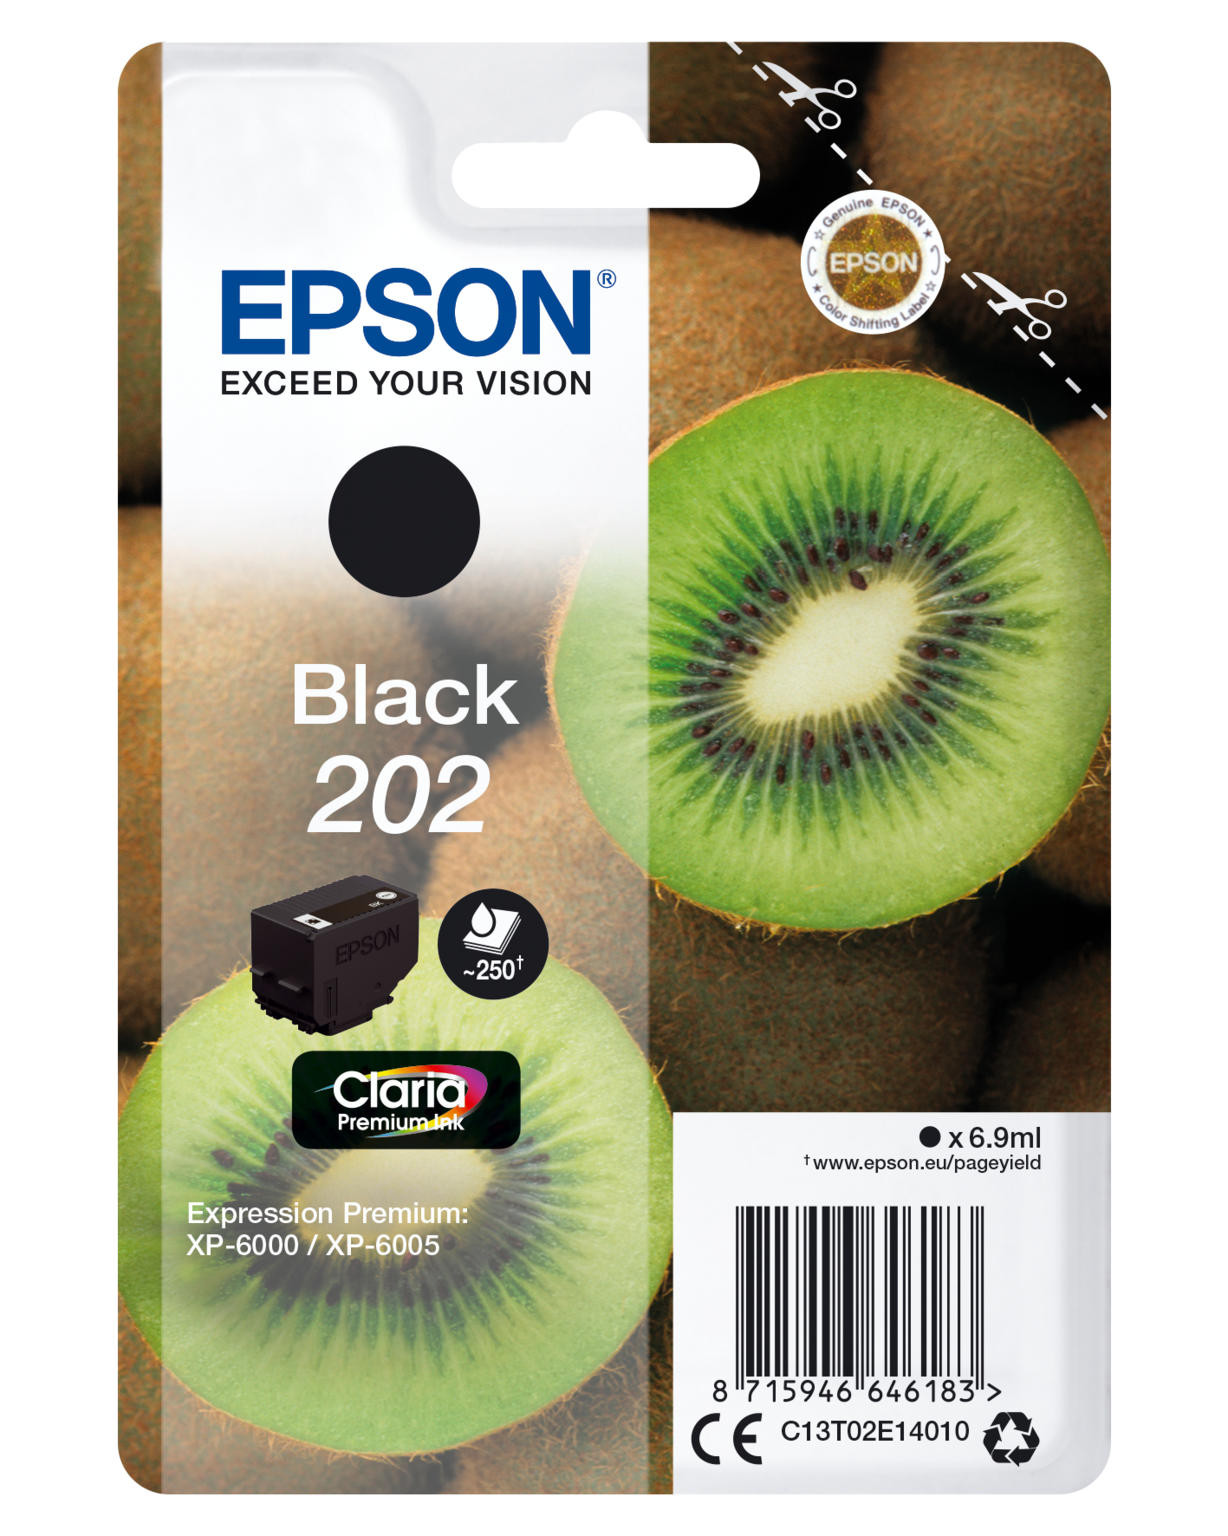 Epson 202 zwart